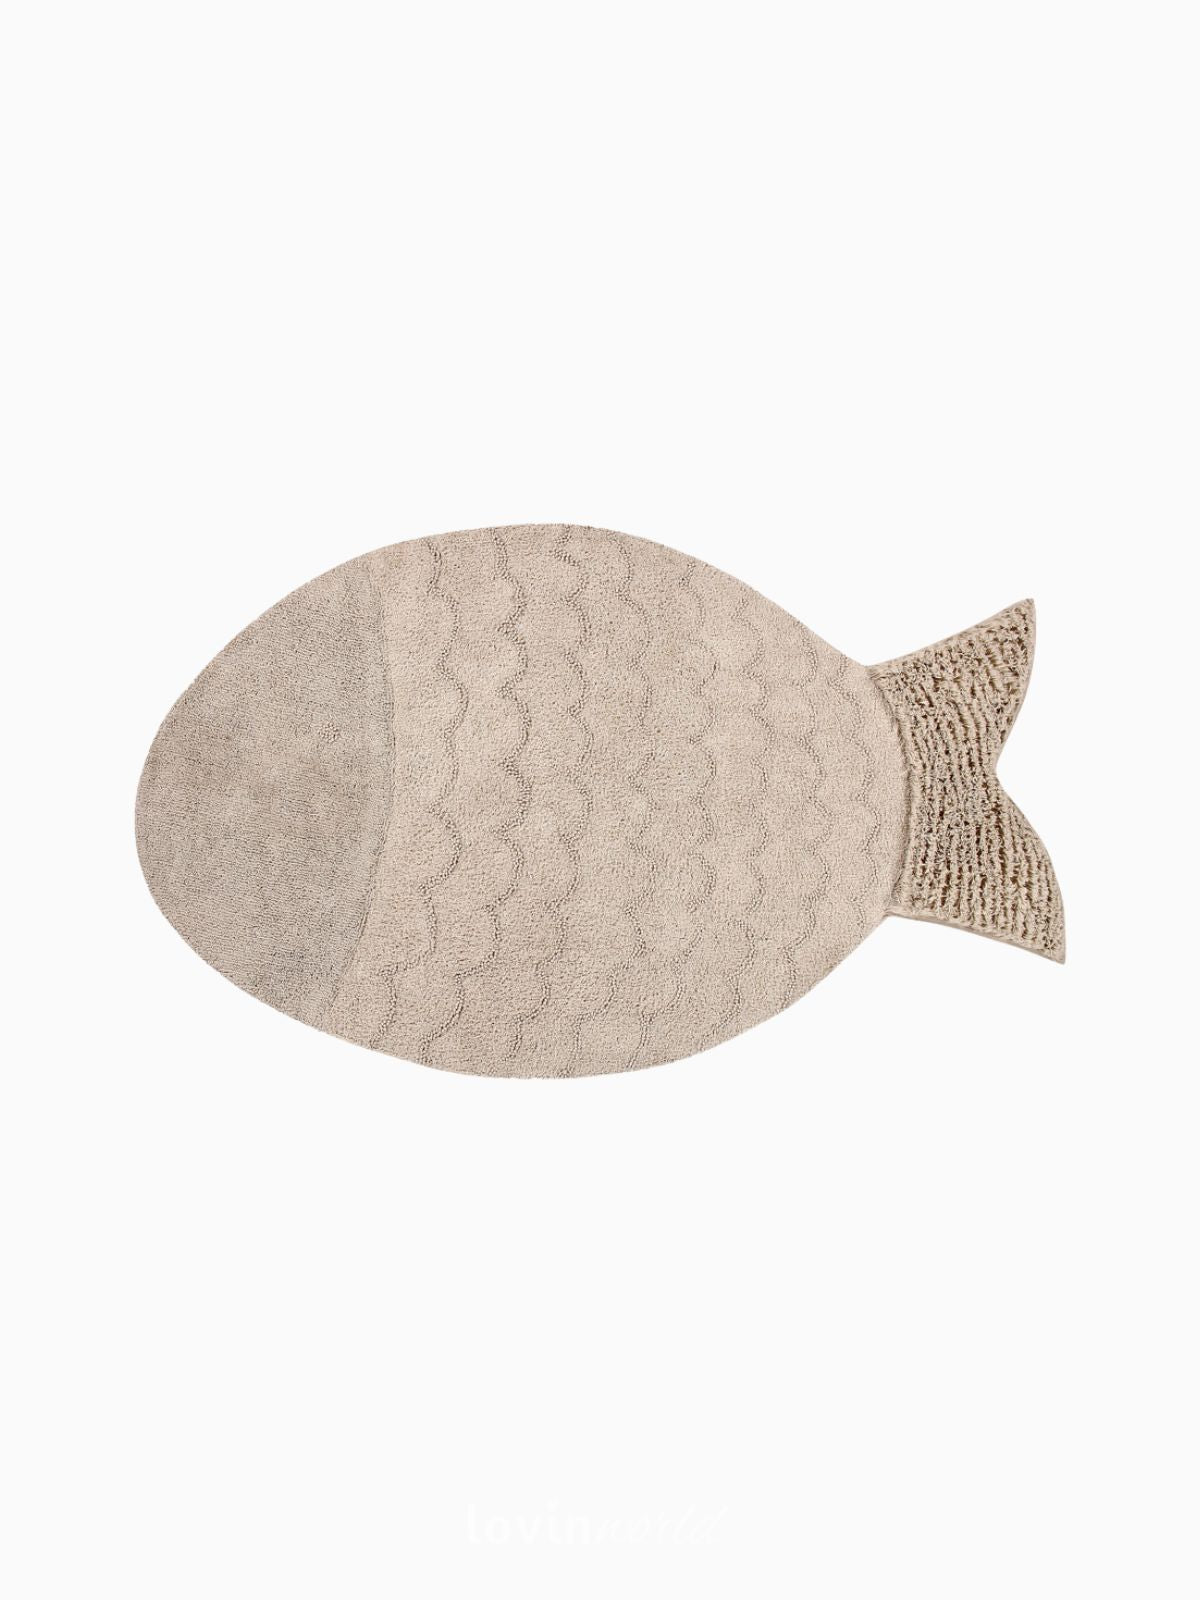 Tappeto in cotone lavabile Big Fish, 110x180 cm.-1